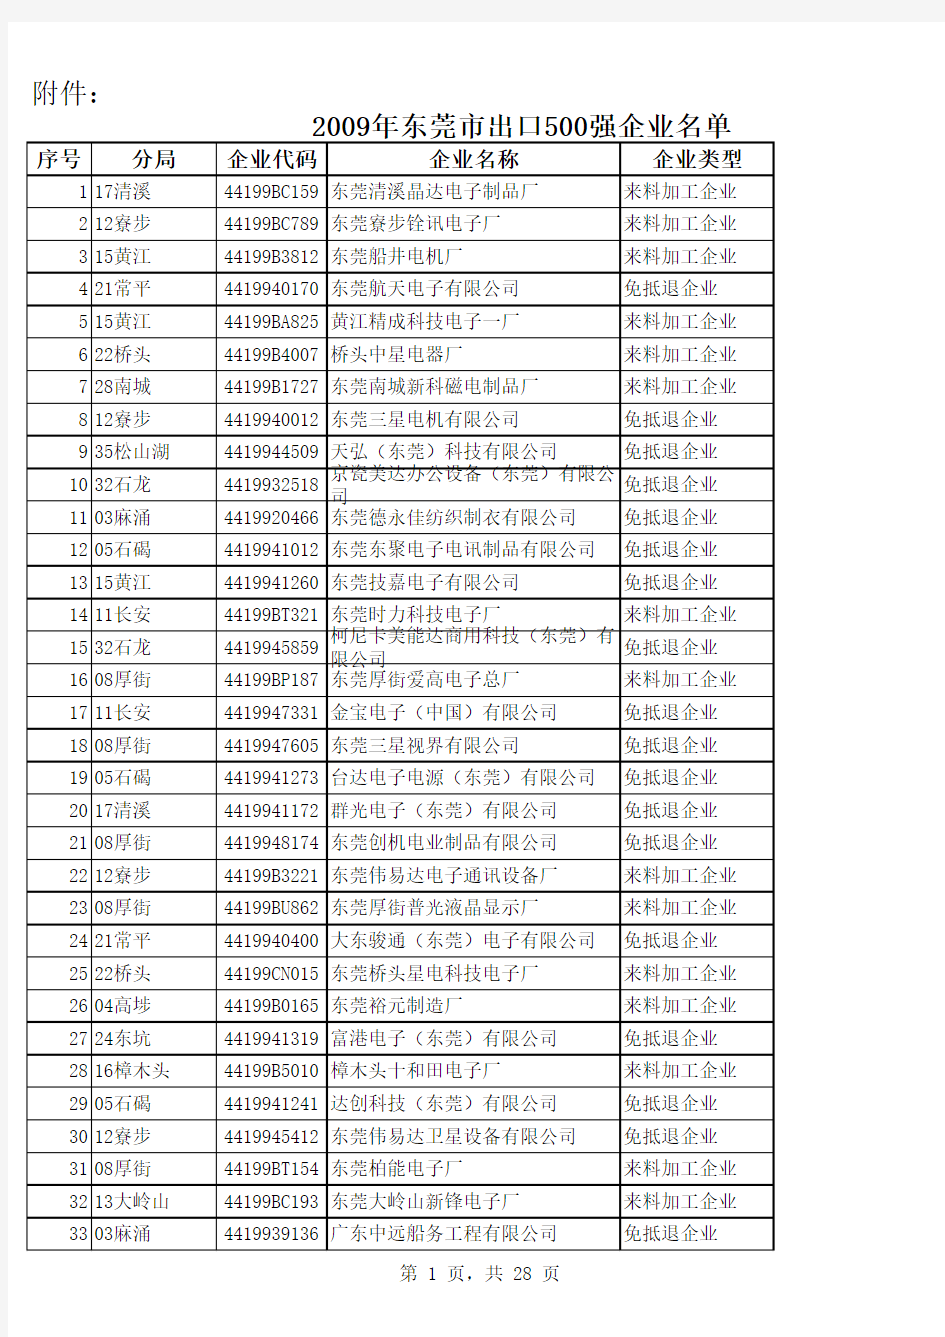 东莞500强企业名单(完整版)